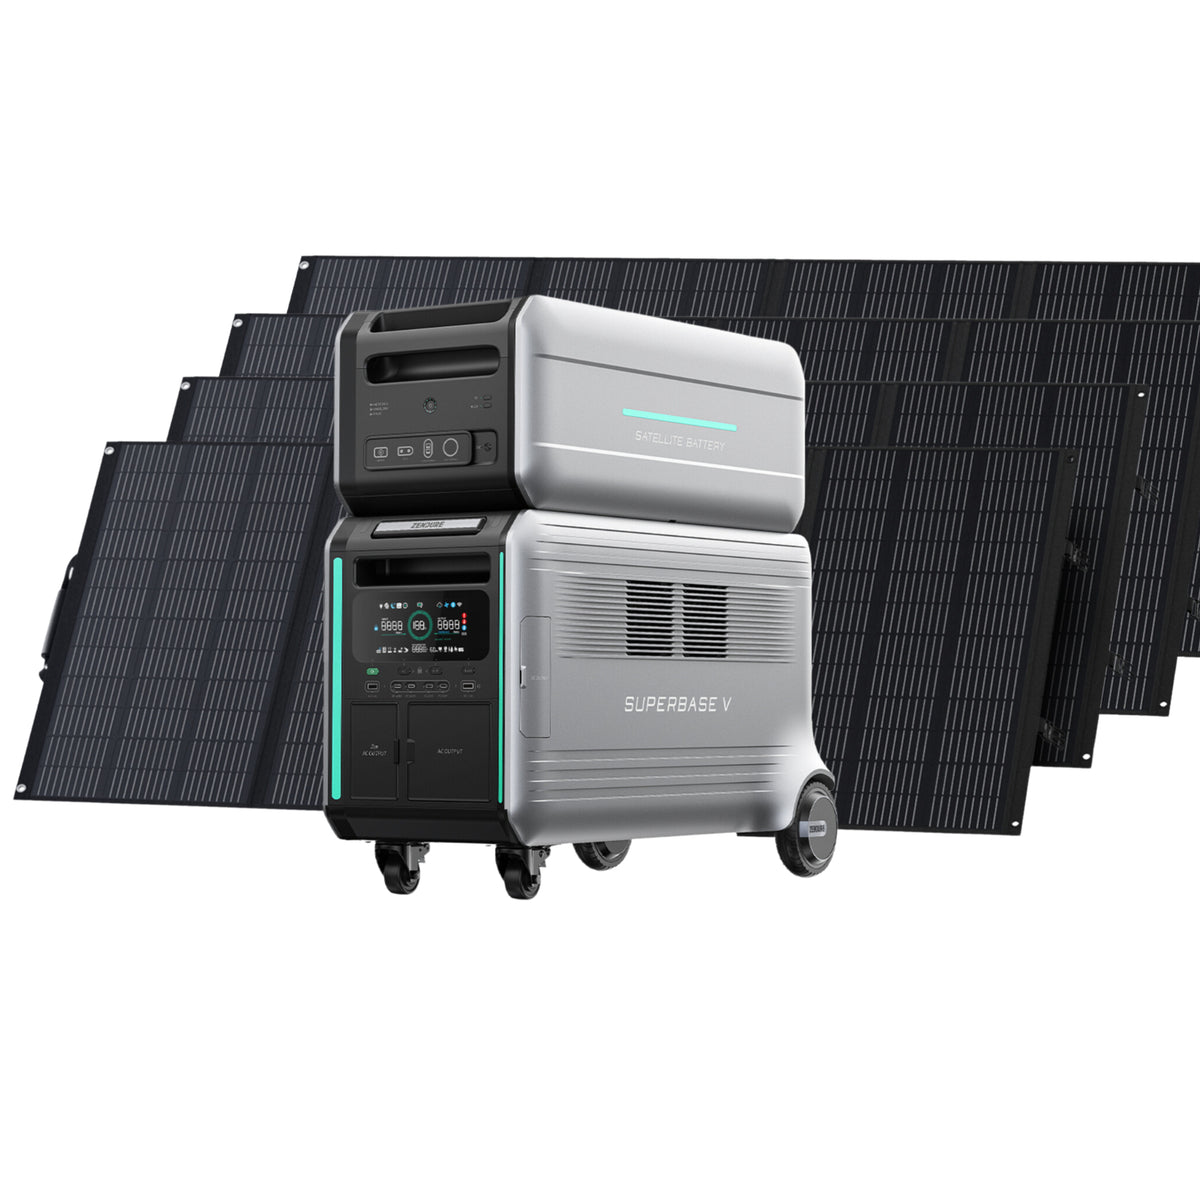 Zendure | SuperBase V6400 Power Station | Build Your Own Kit